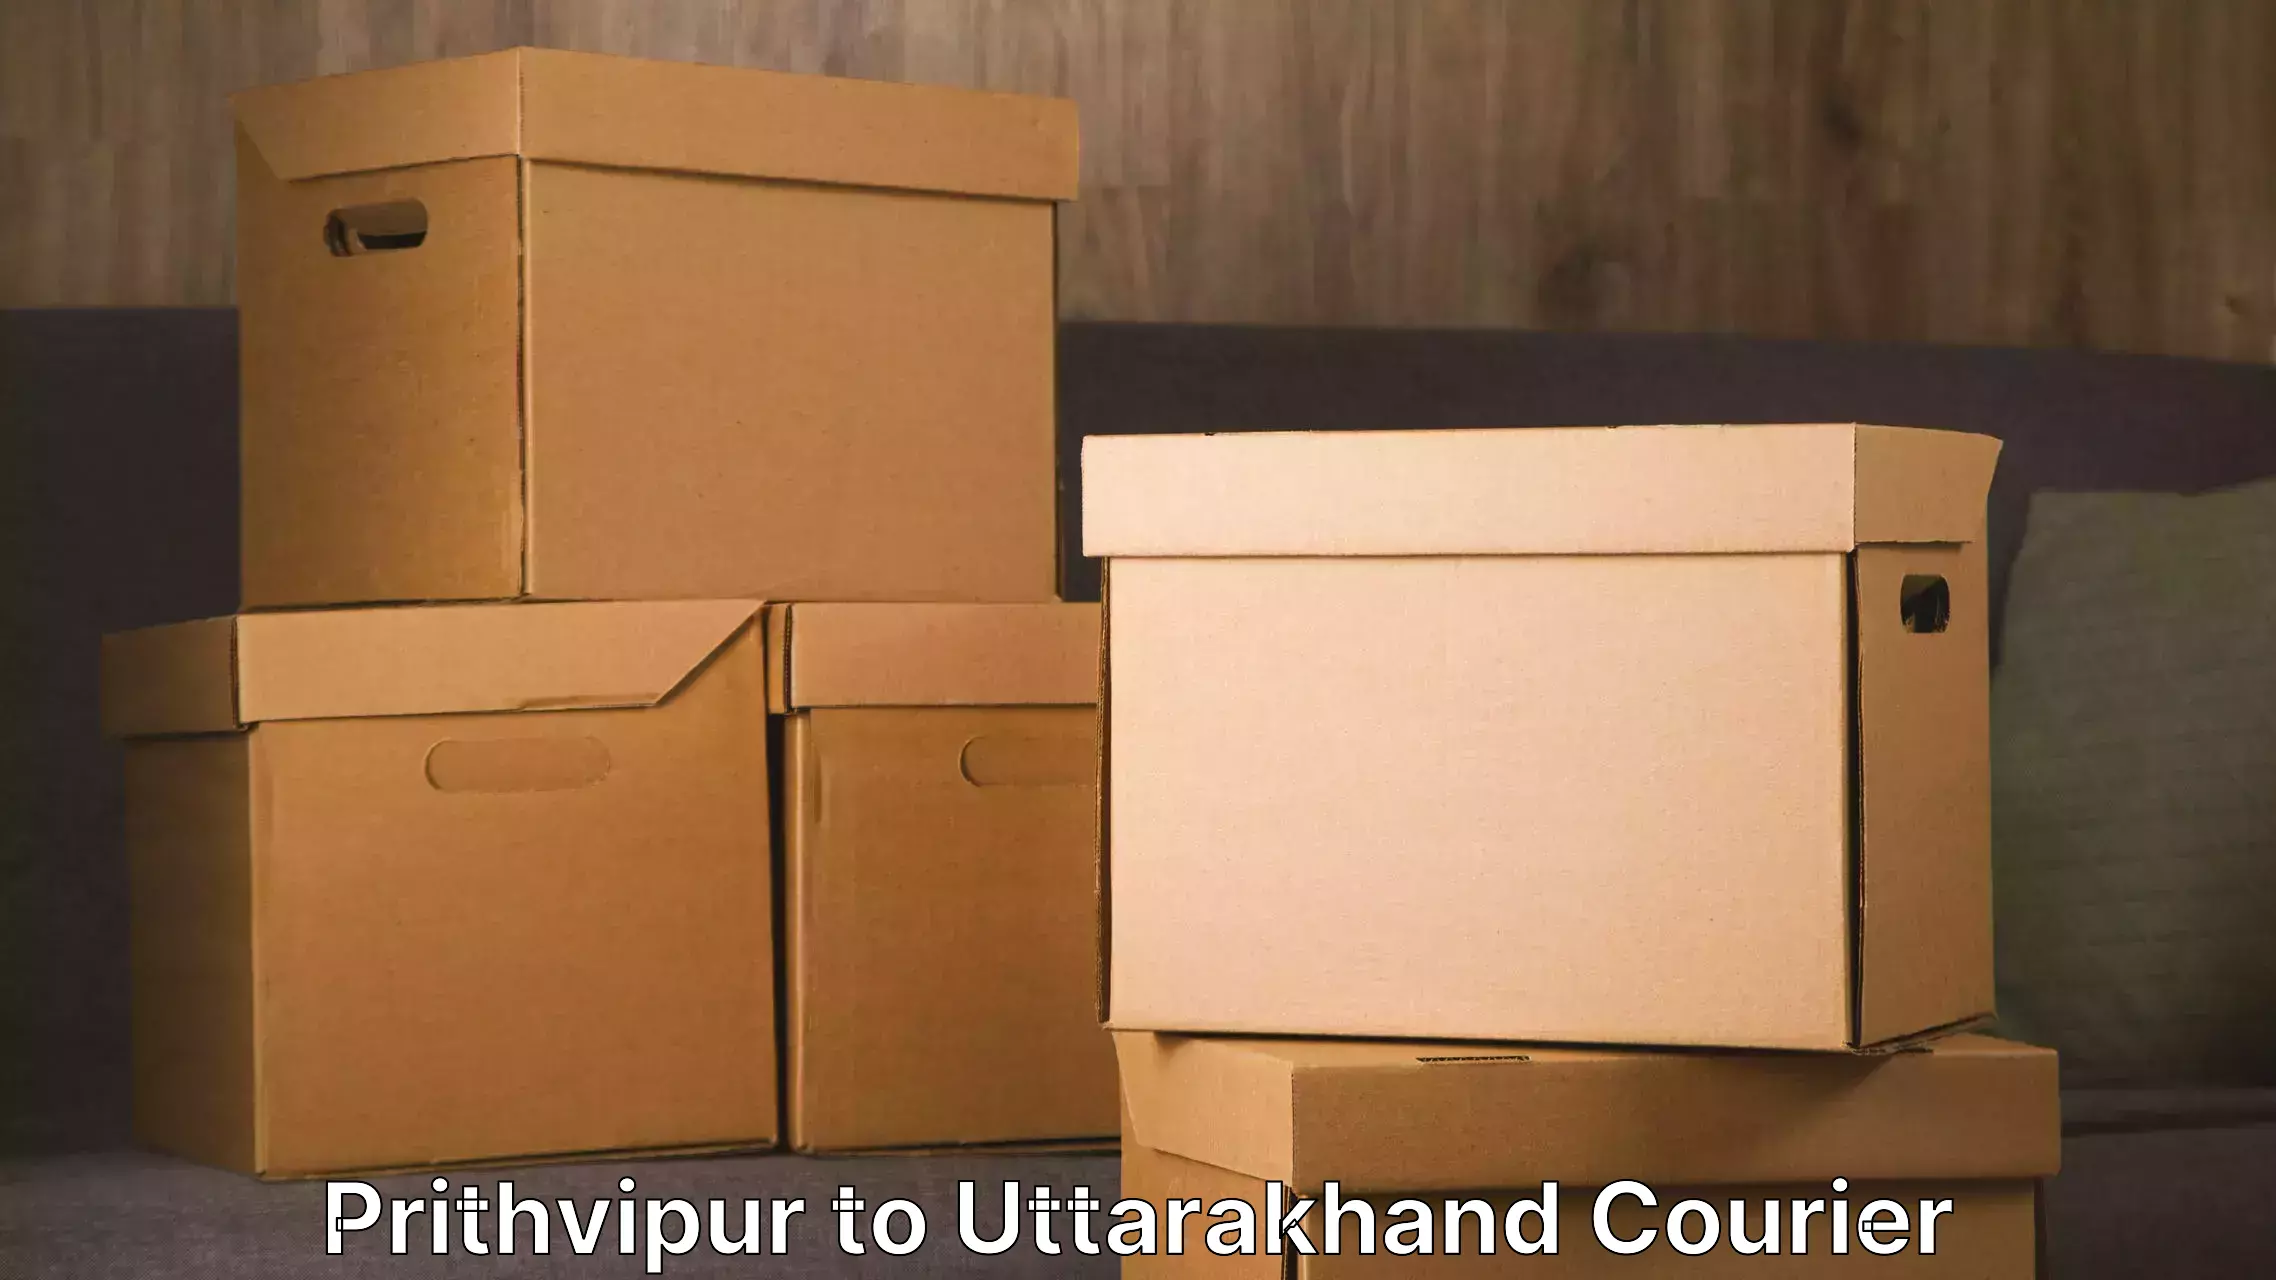 Furniture moving experts Prithvipur to Rishikesh